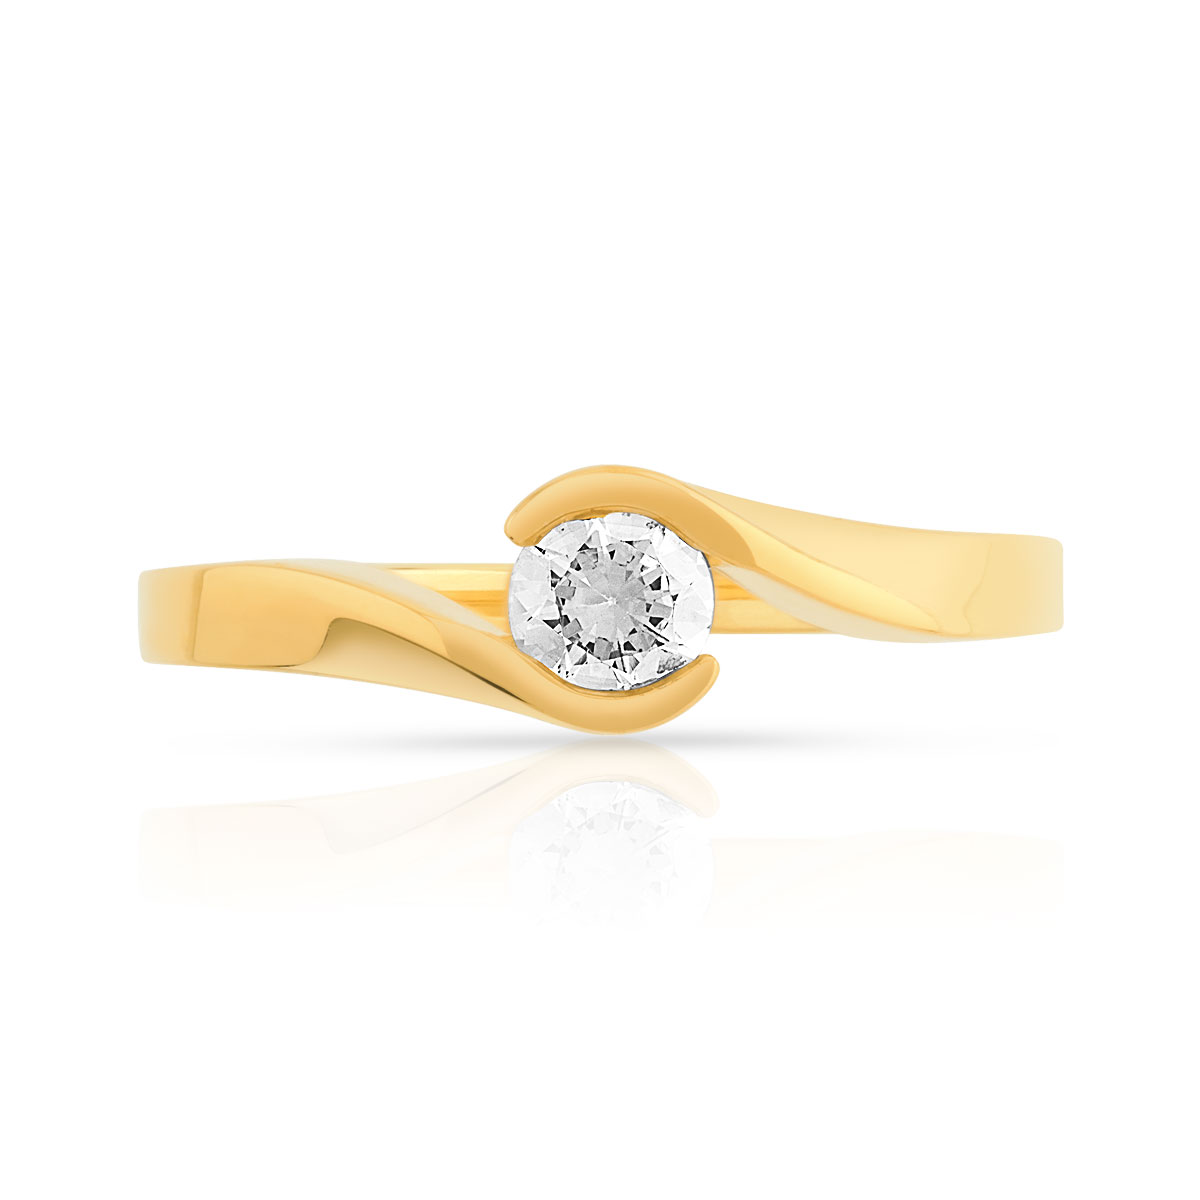 Bague solitaire or 750 jaune diamant synthétique 0.30 carat - vue 3